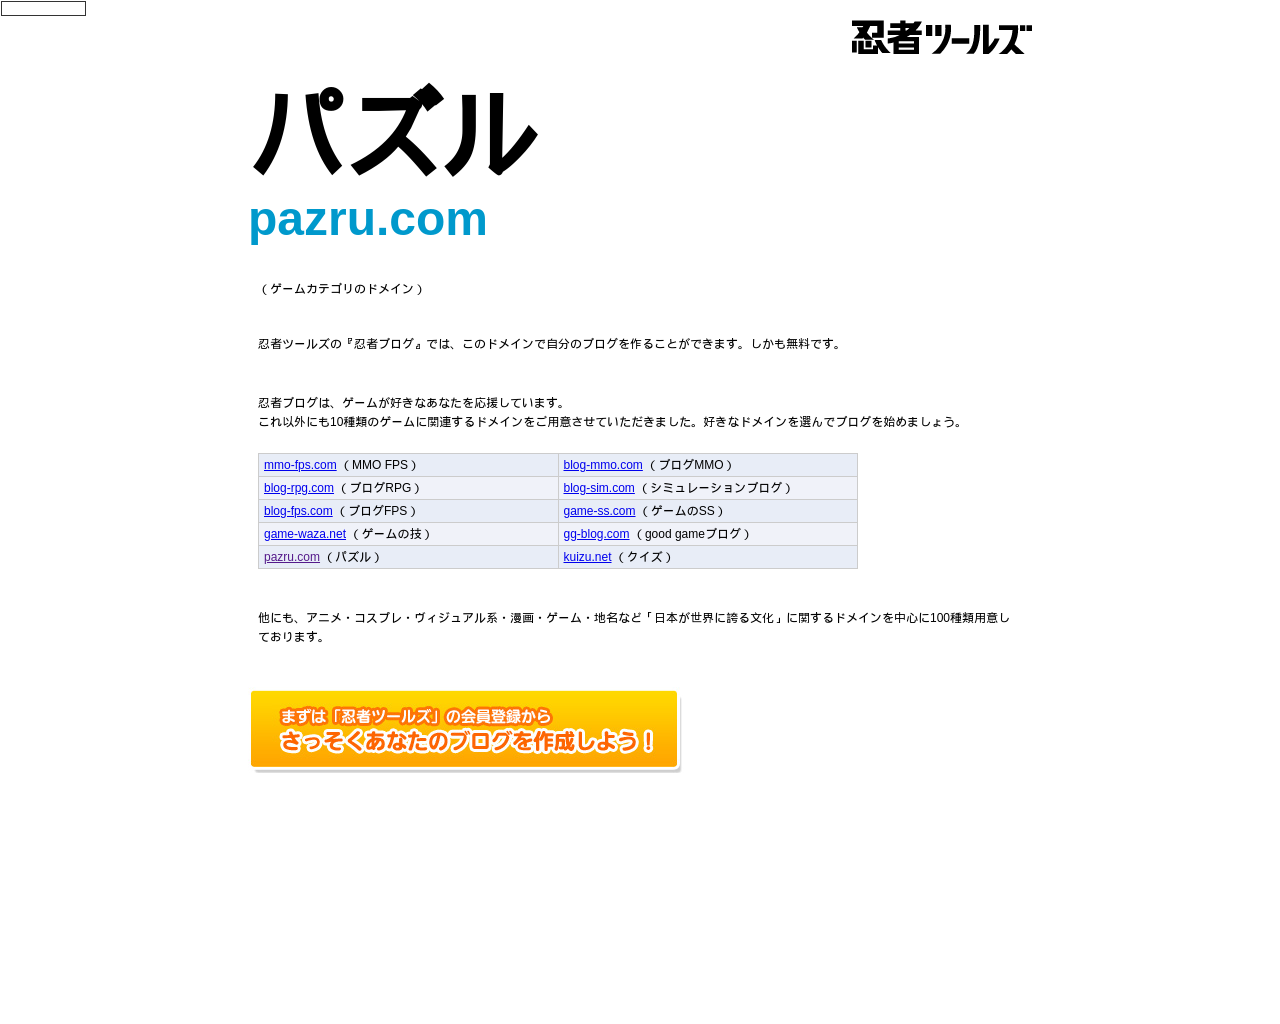 pazru.com